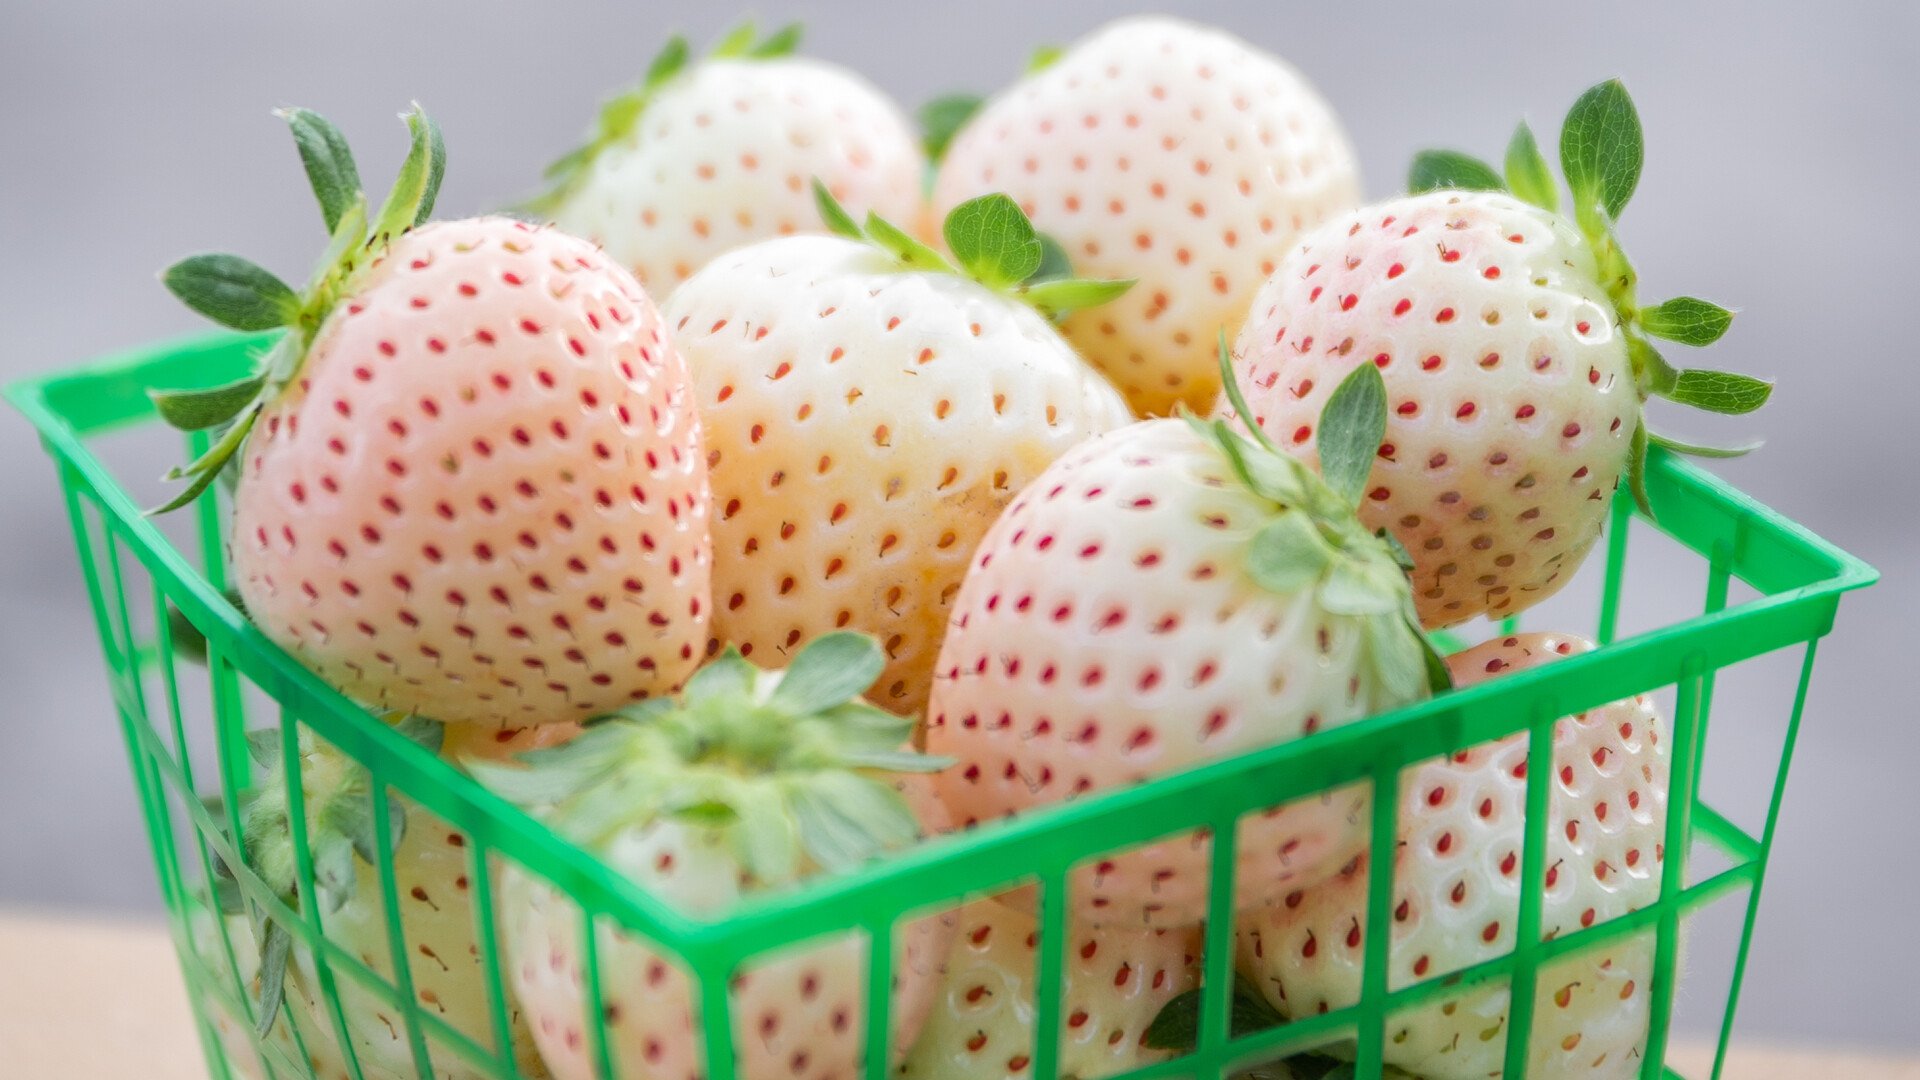 University of Florida Develops White Strawberry Variety